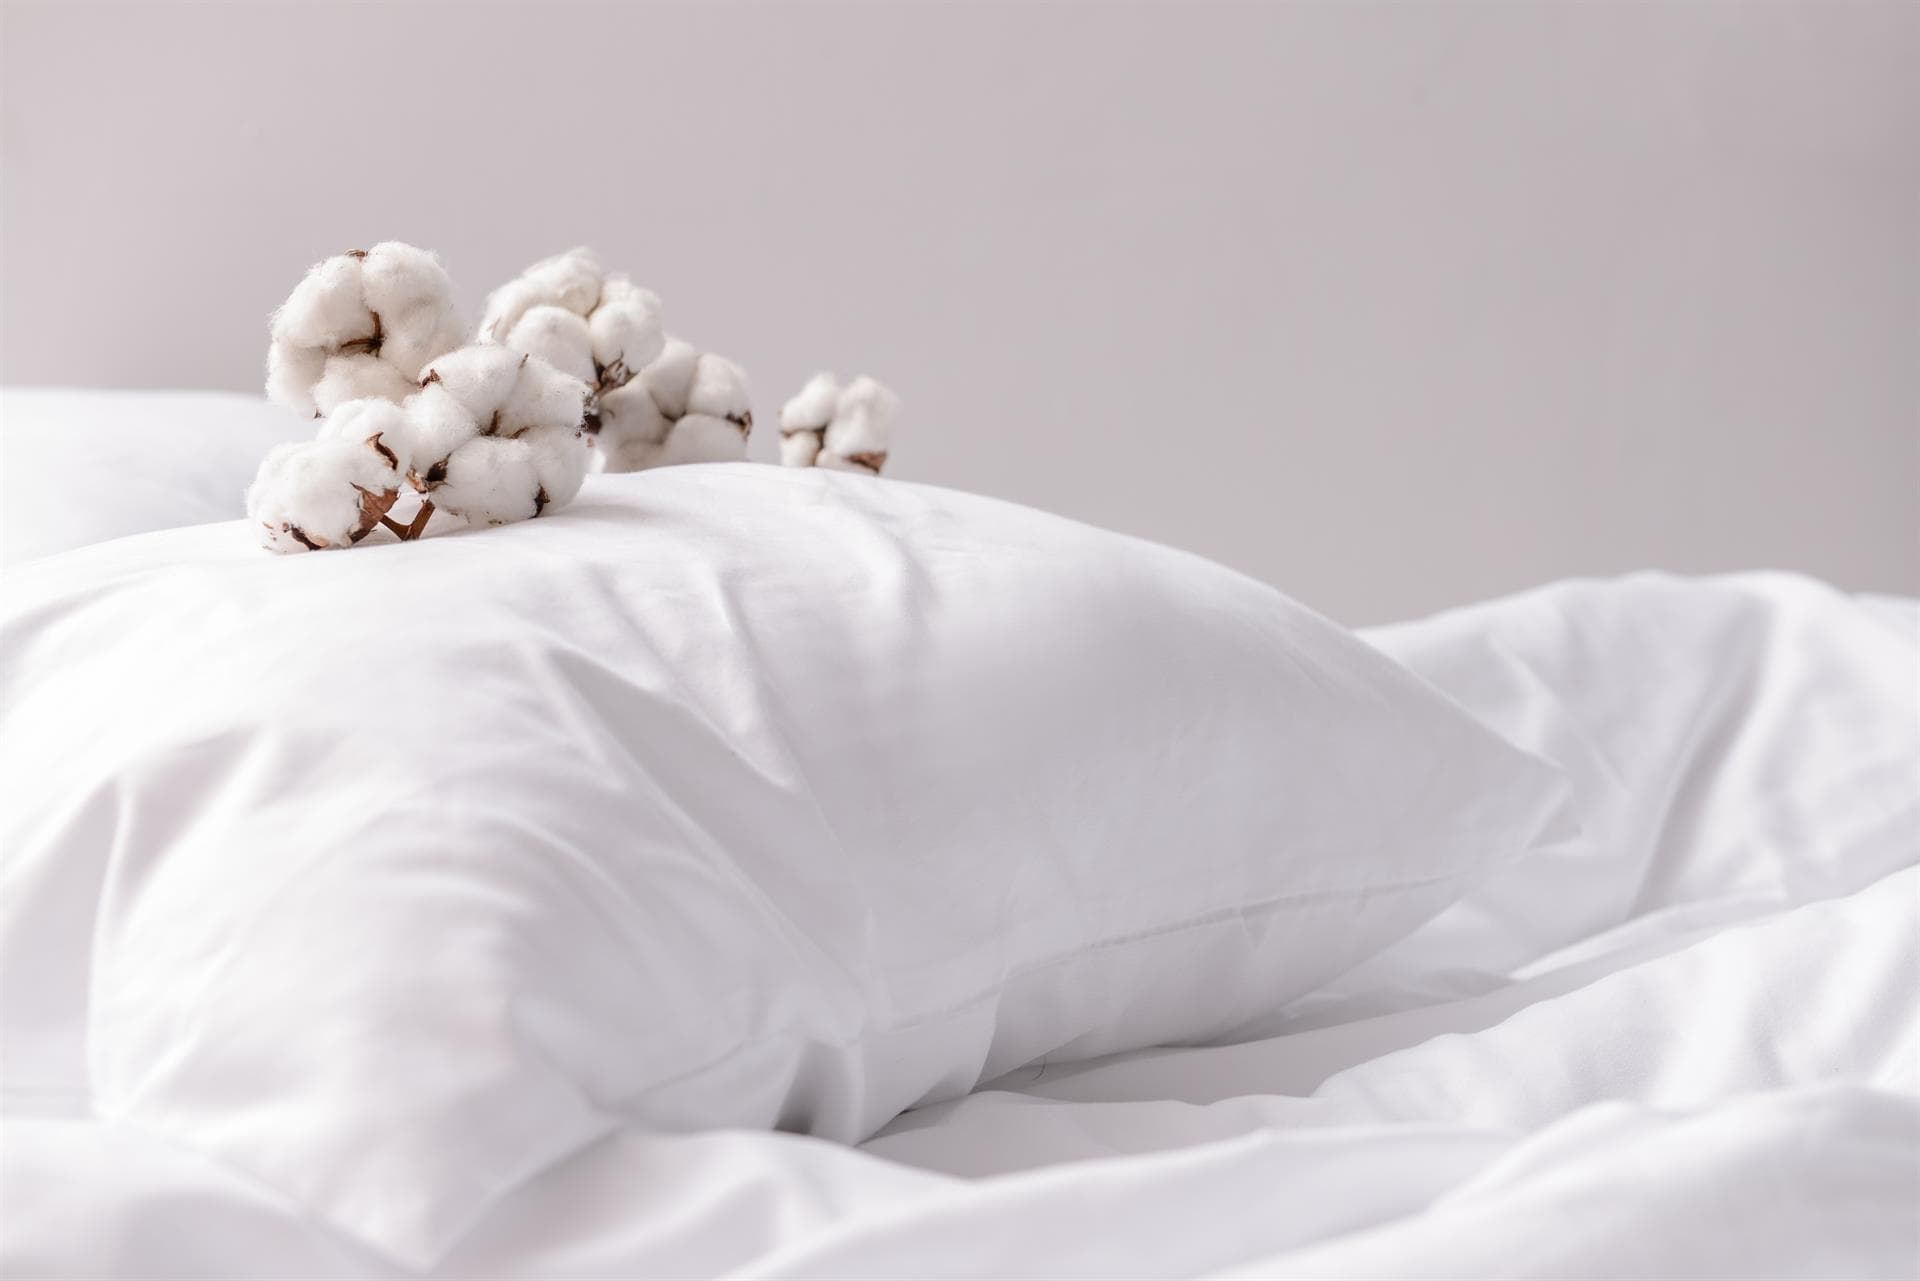  La importancia de comprar una almohada adecuada para complementar tu colchón